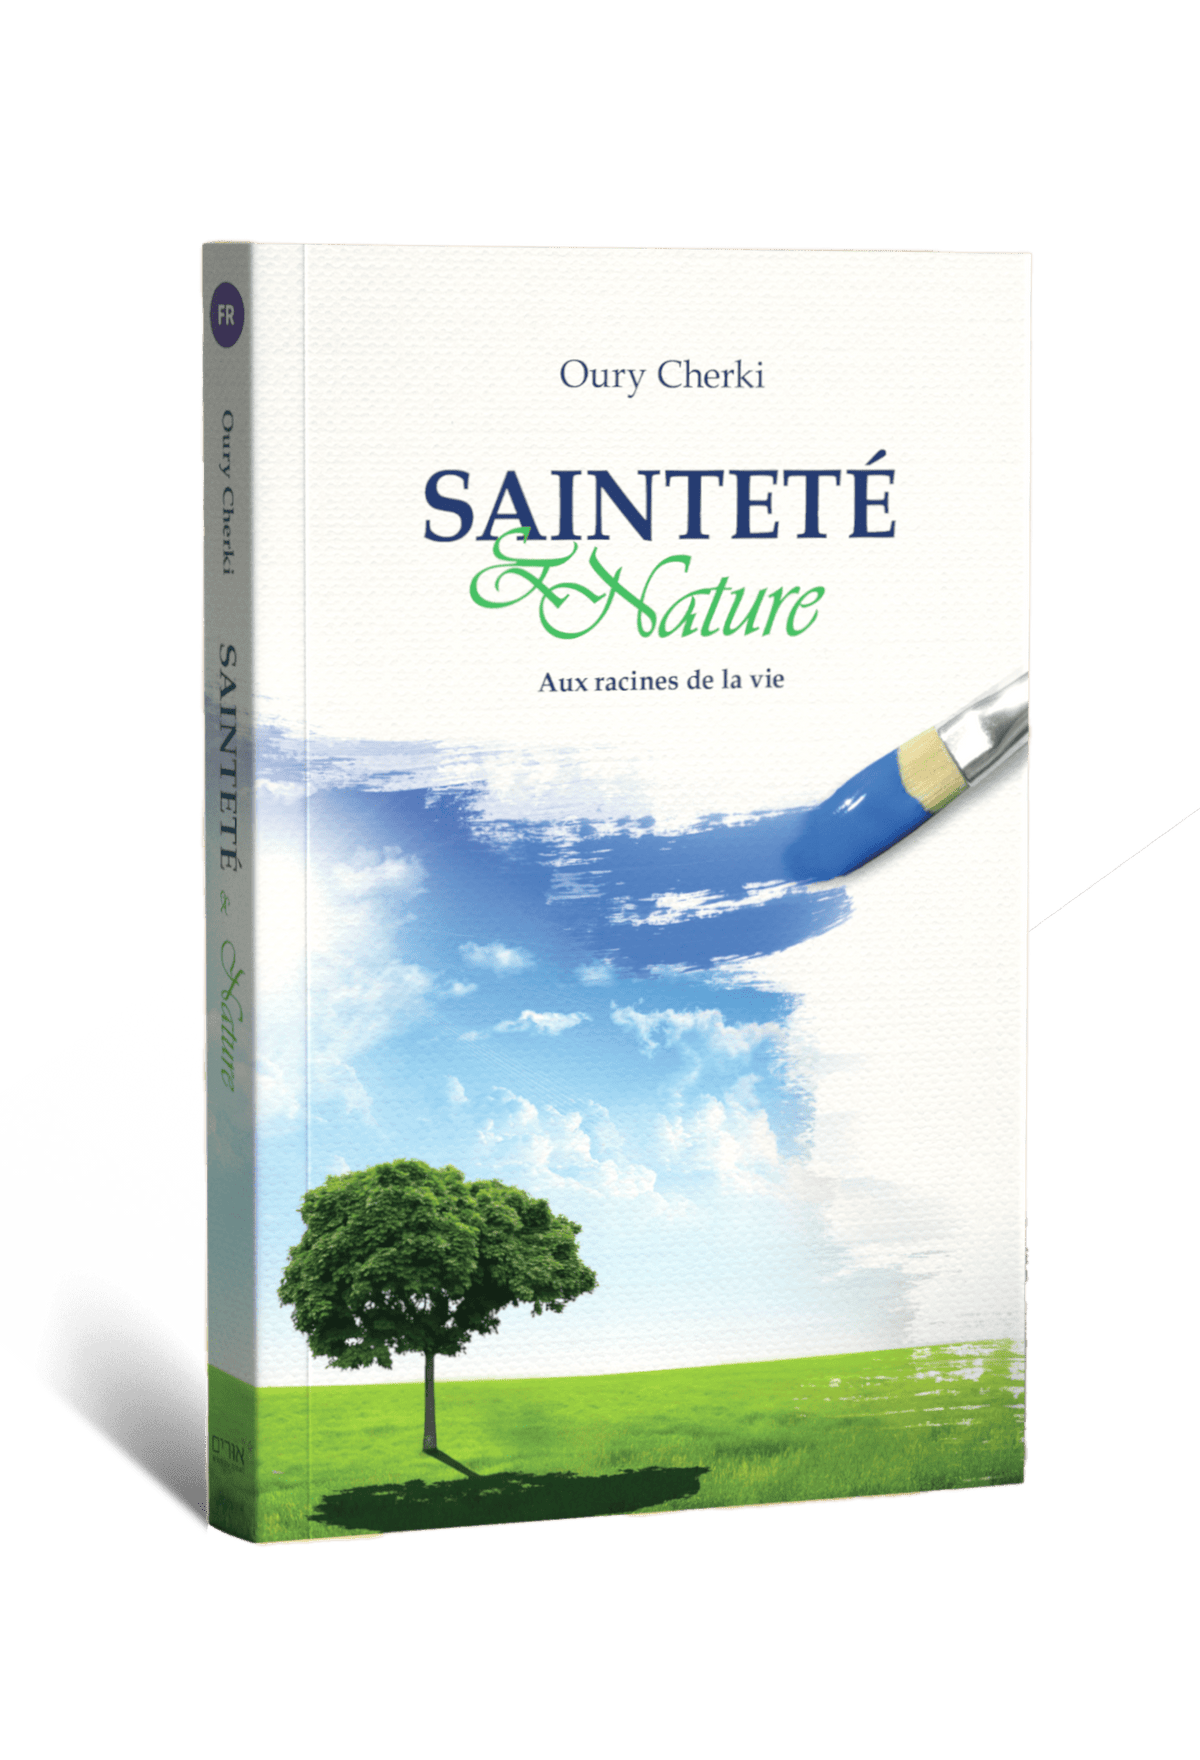 Saintete et Nature: Aux racines de la vie